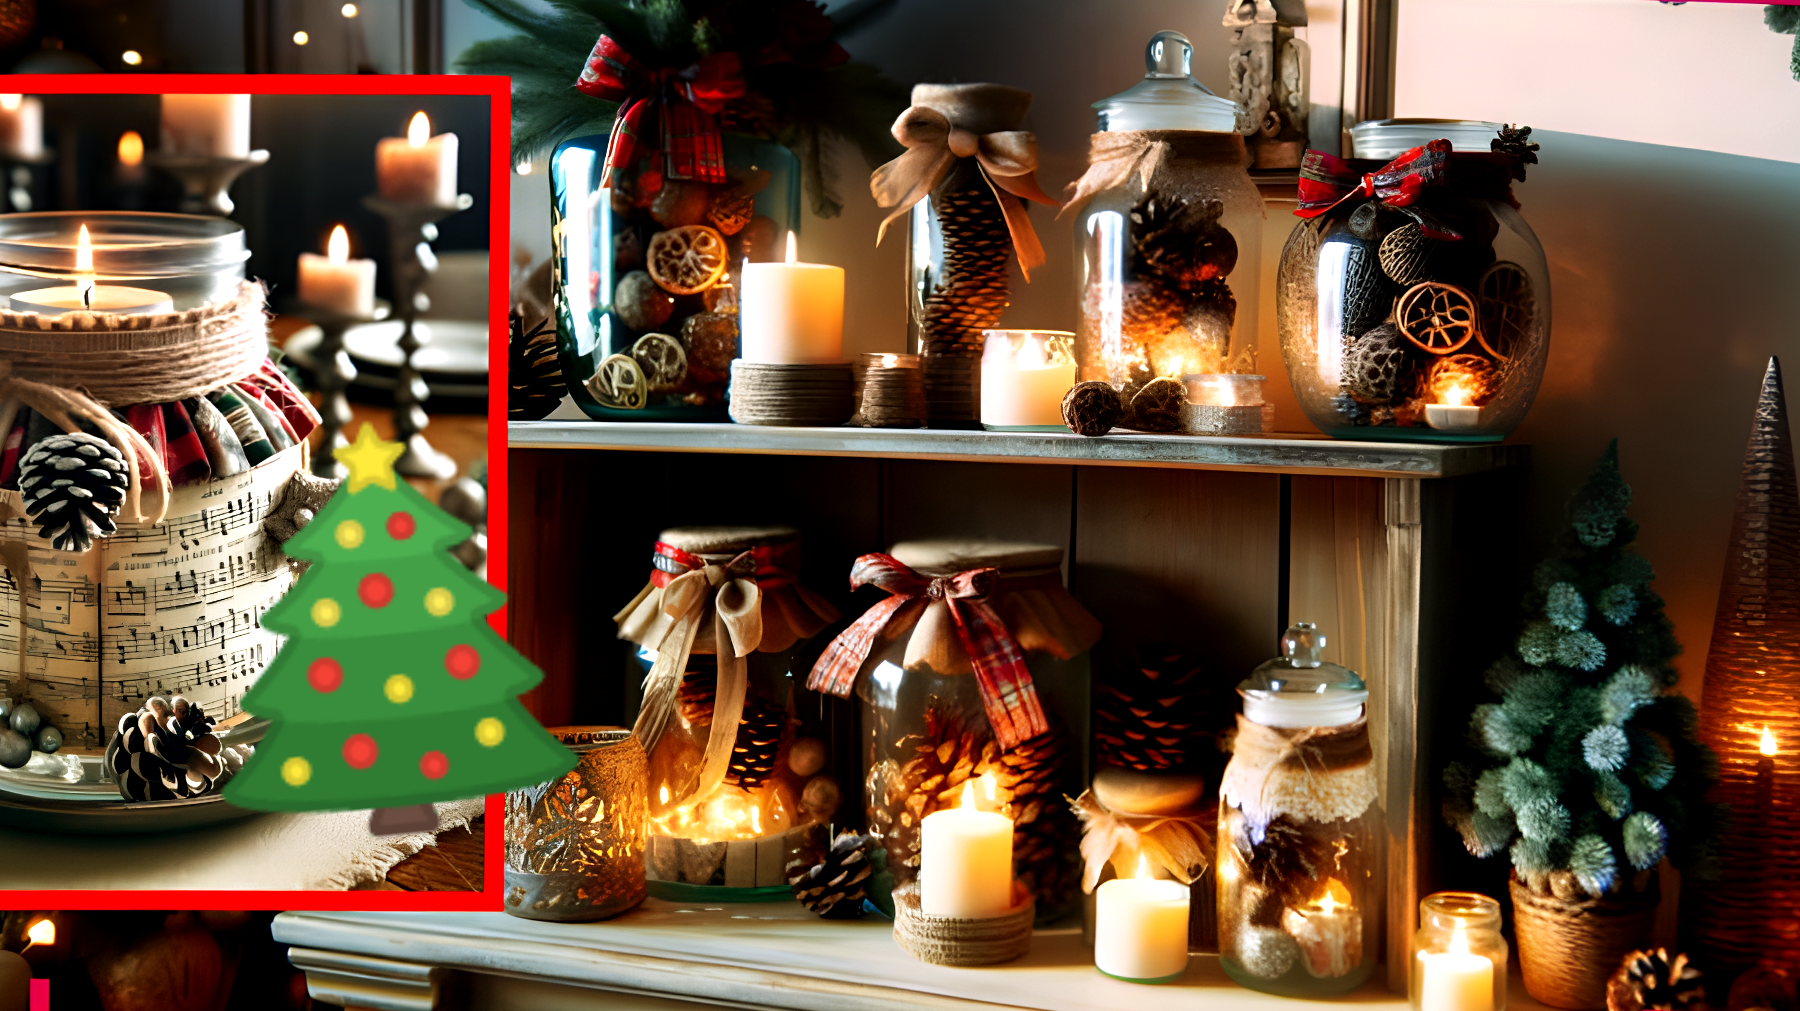 Scopri come decorare la tua casa a Natale con dei bellissimi vasetti fai da te! (Foto)